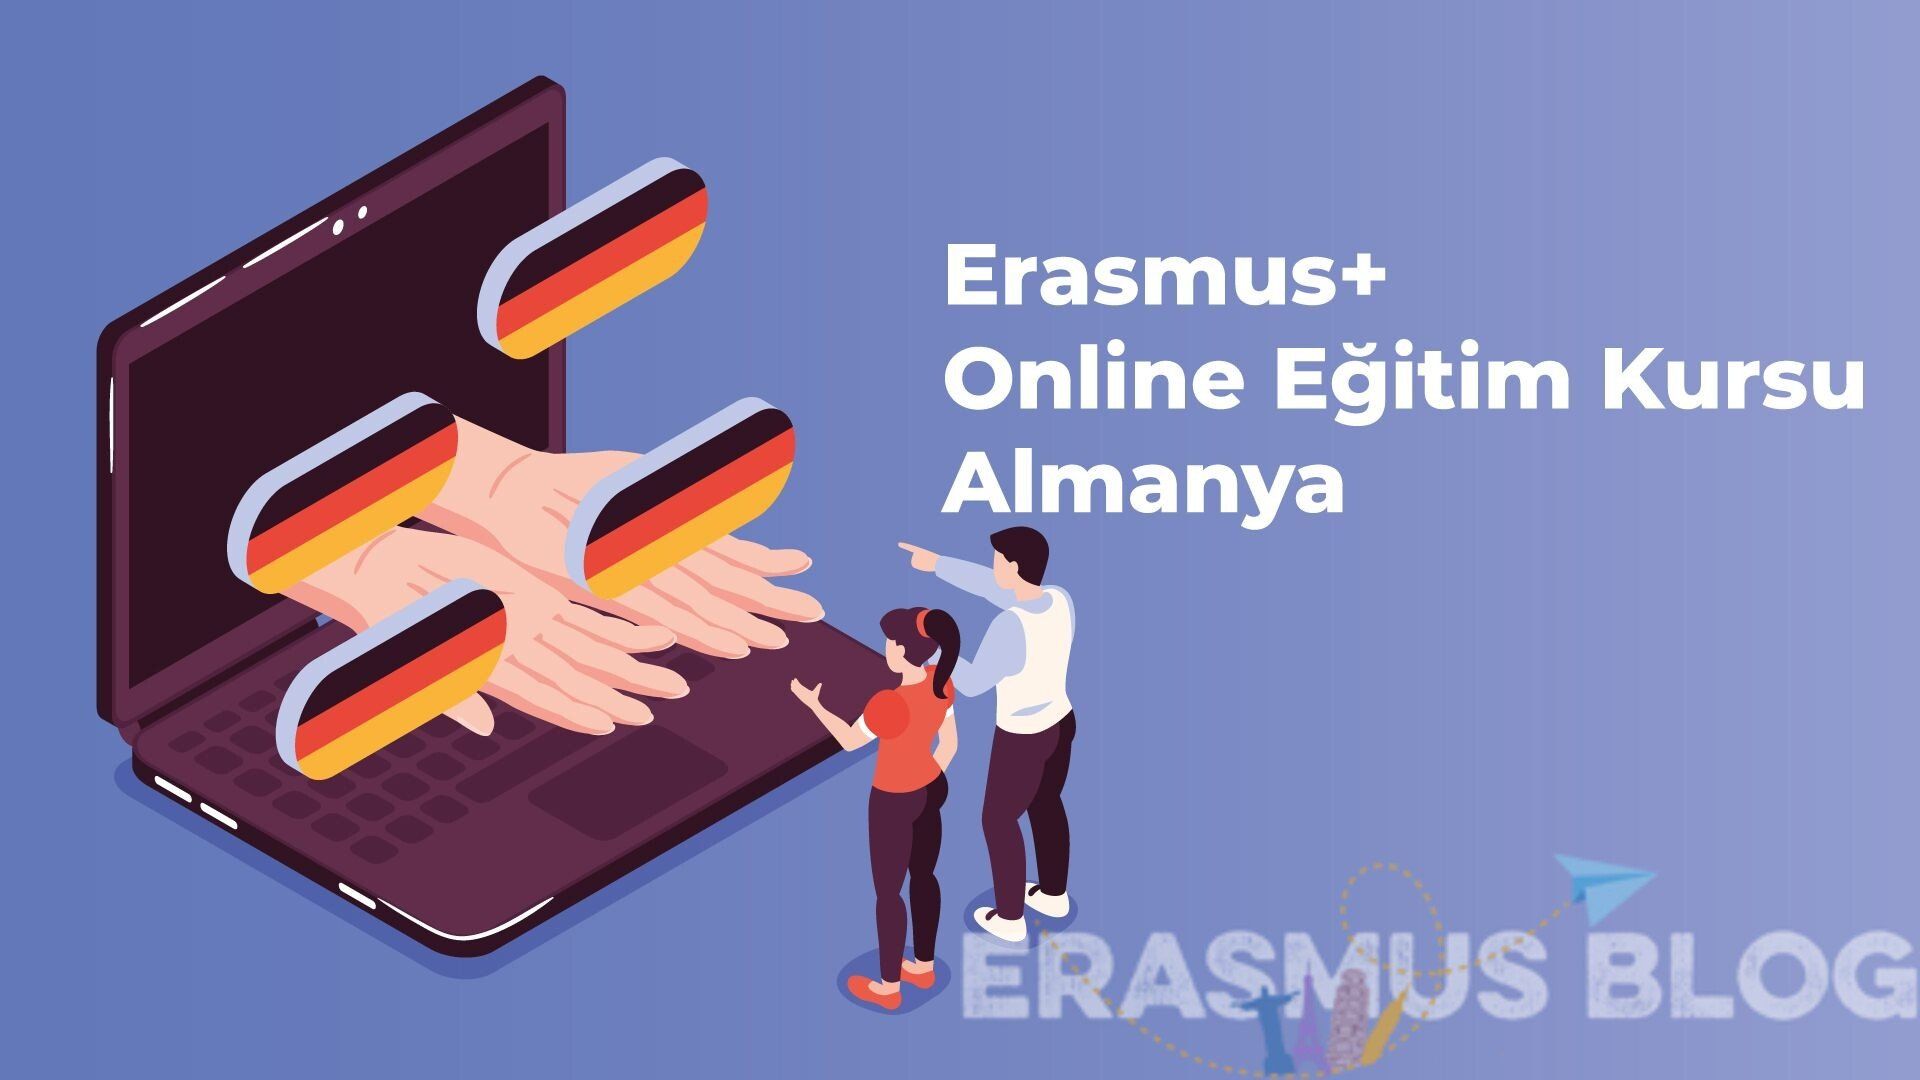 Almanya - Erasmus + Online Eğitim Kursu